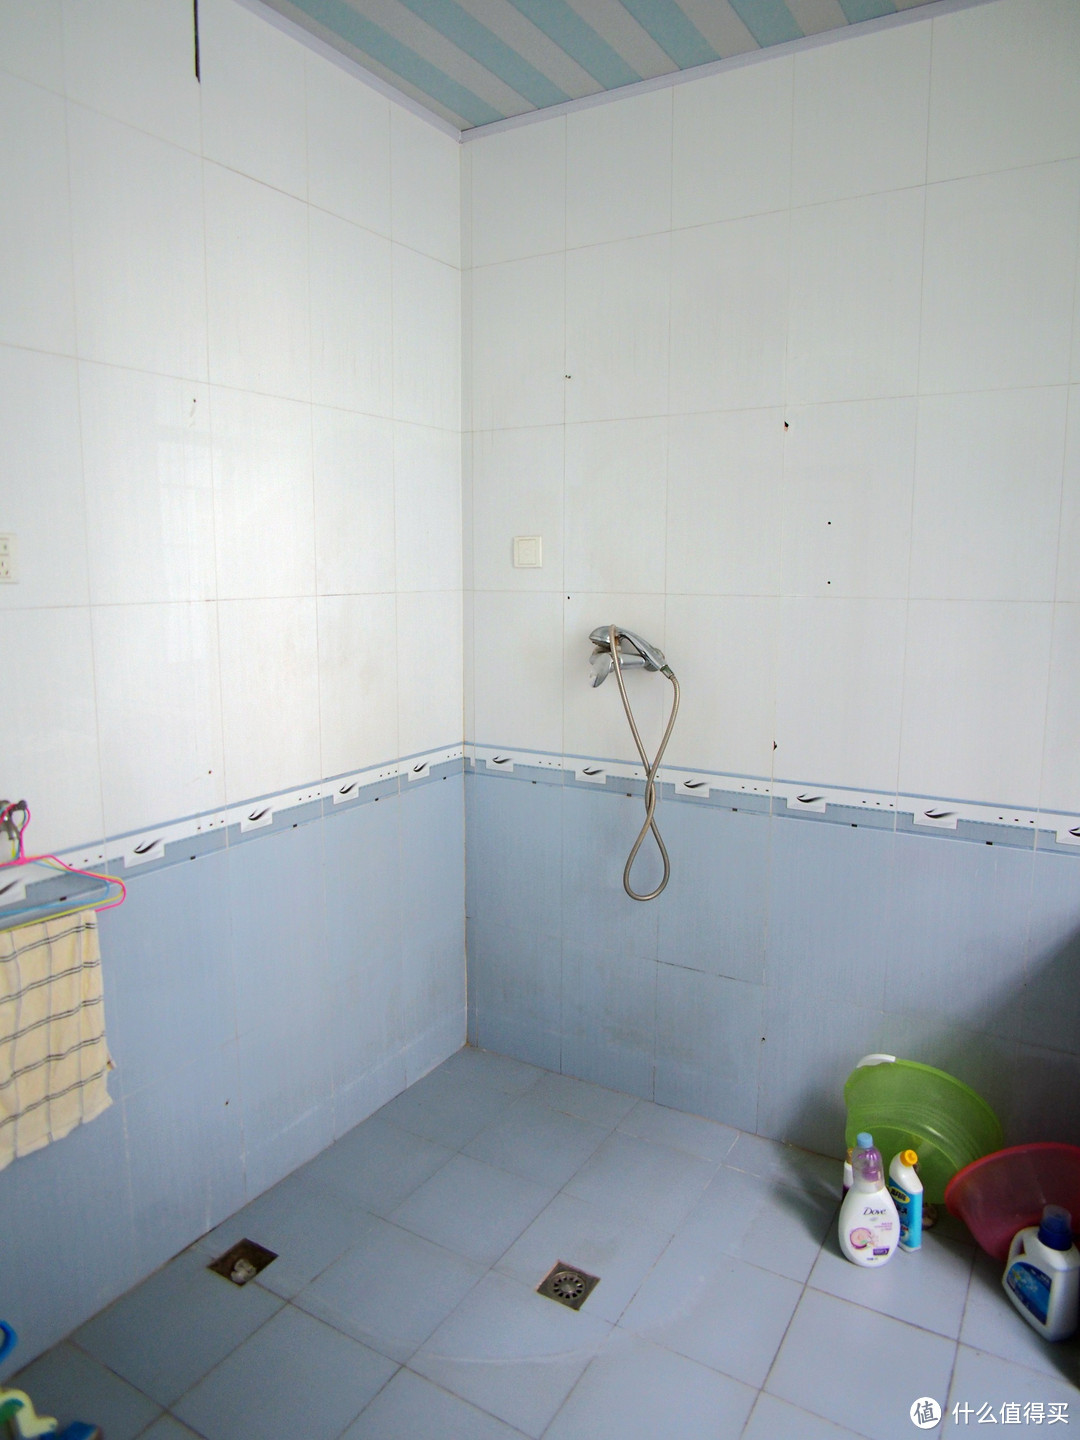 婚房DIY装修 — 旧淋浴房拆除及 莱博顿 淋浴房选购安装